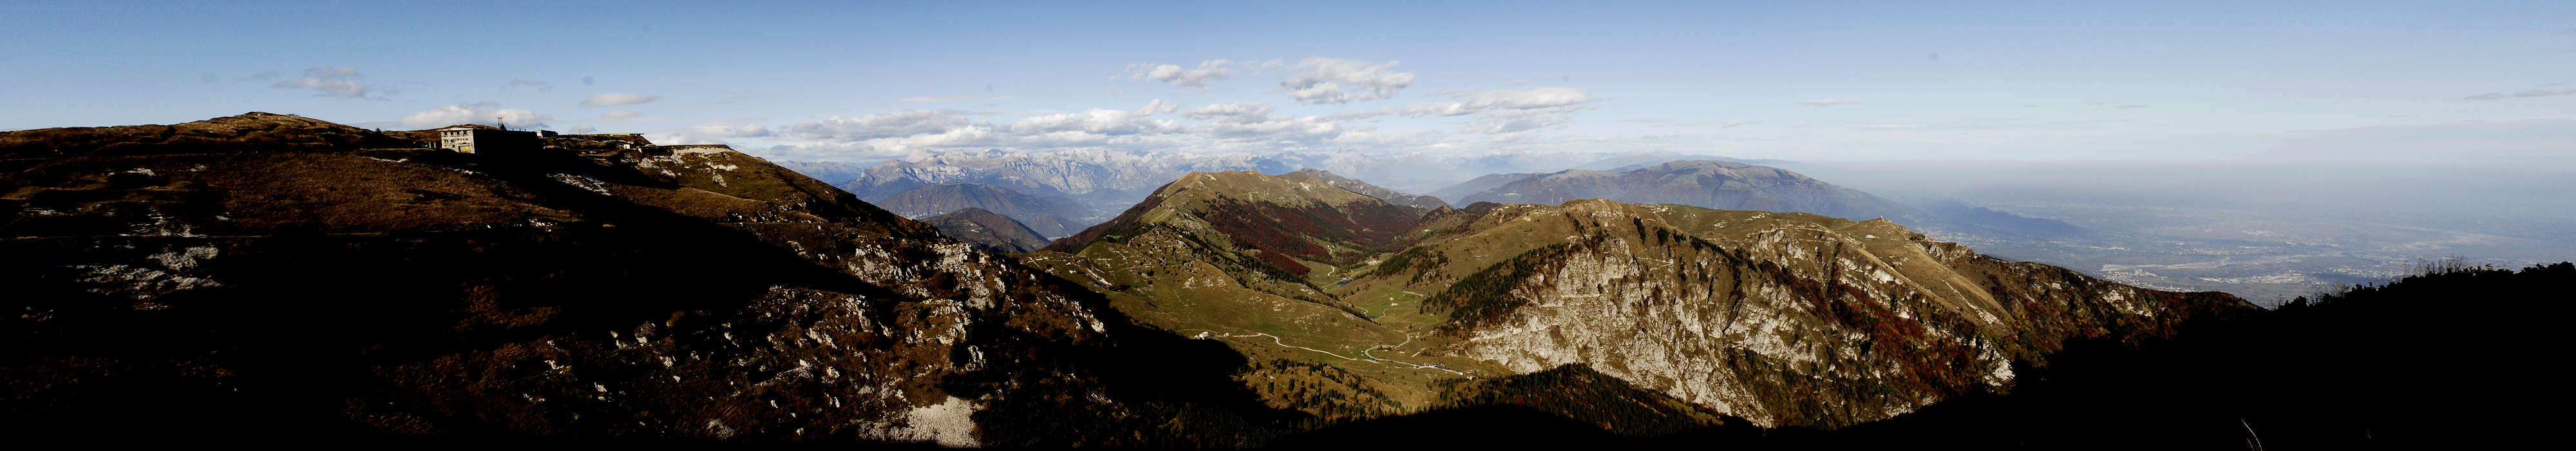 Monte Grappa, cima Grappa e pianura veneta - fotografia panoramica